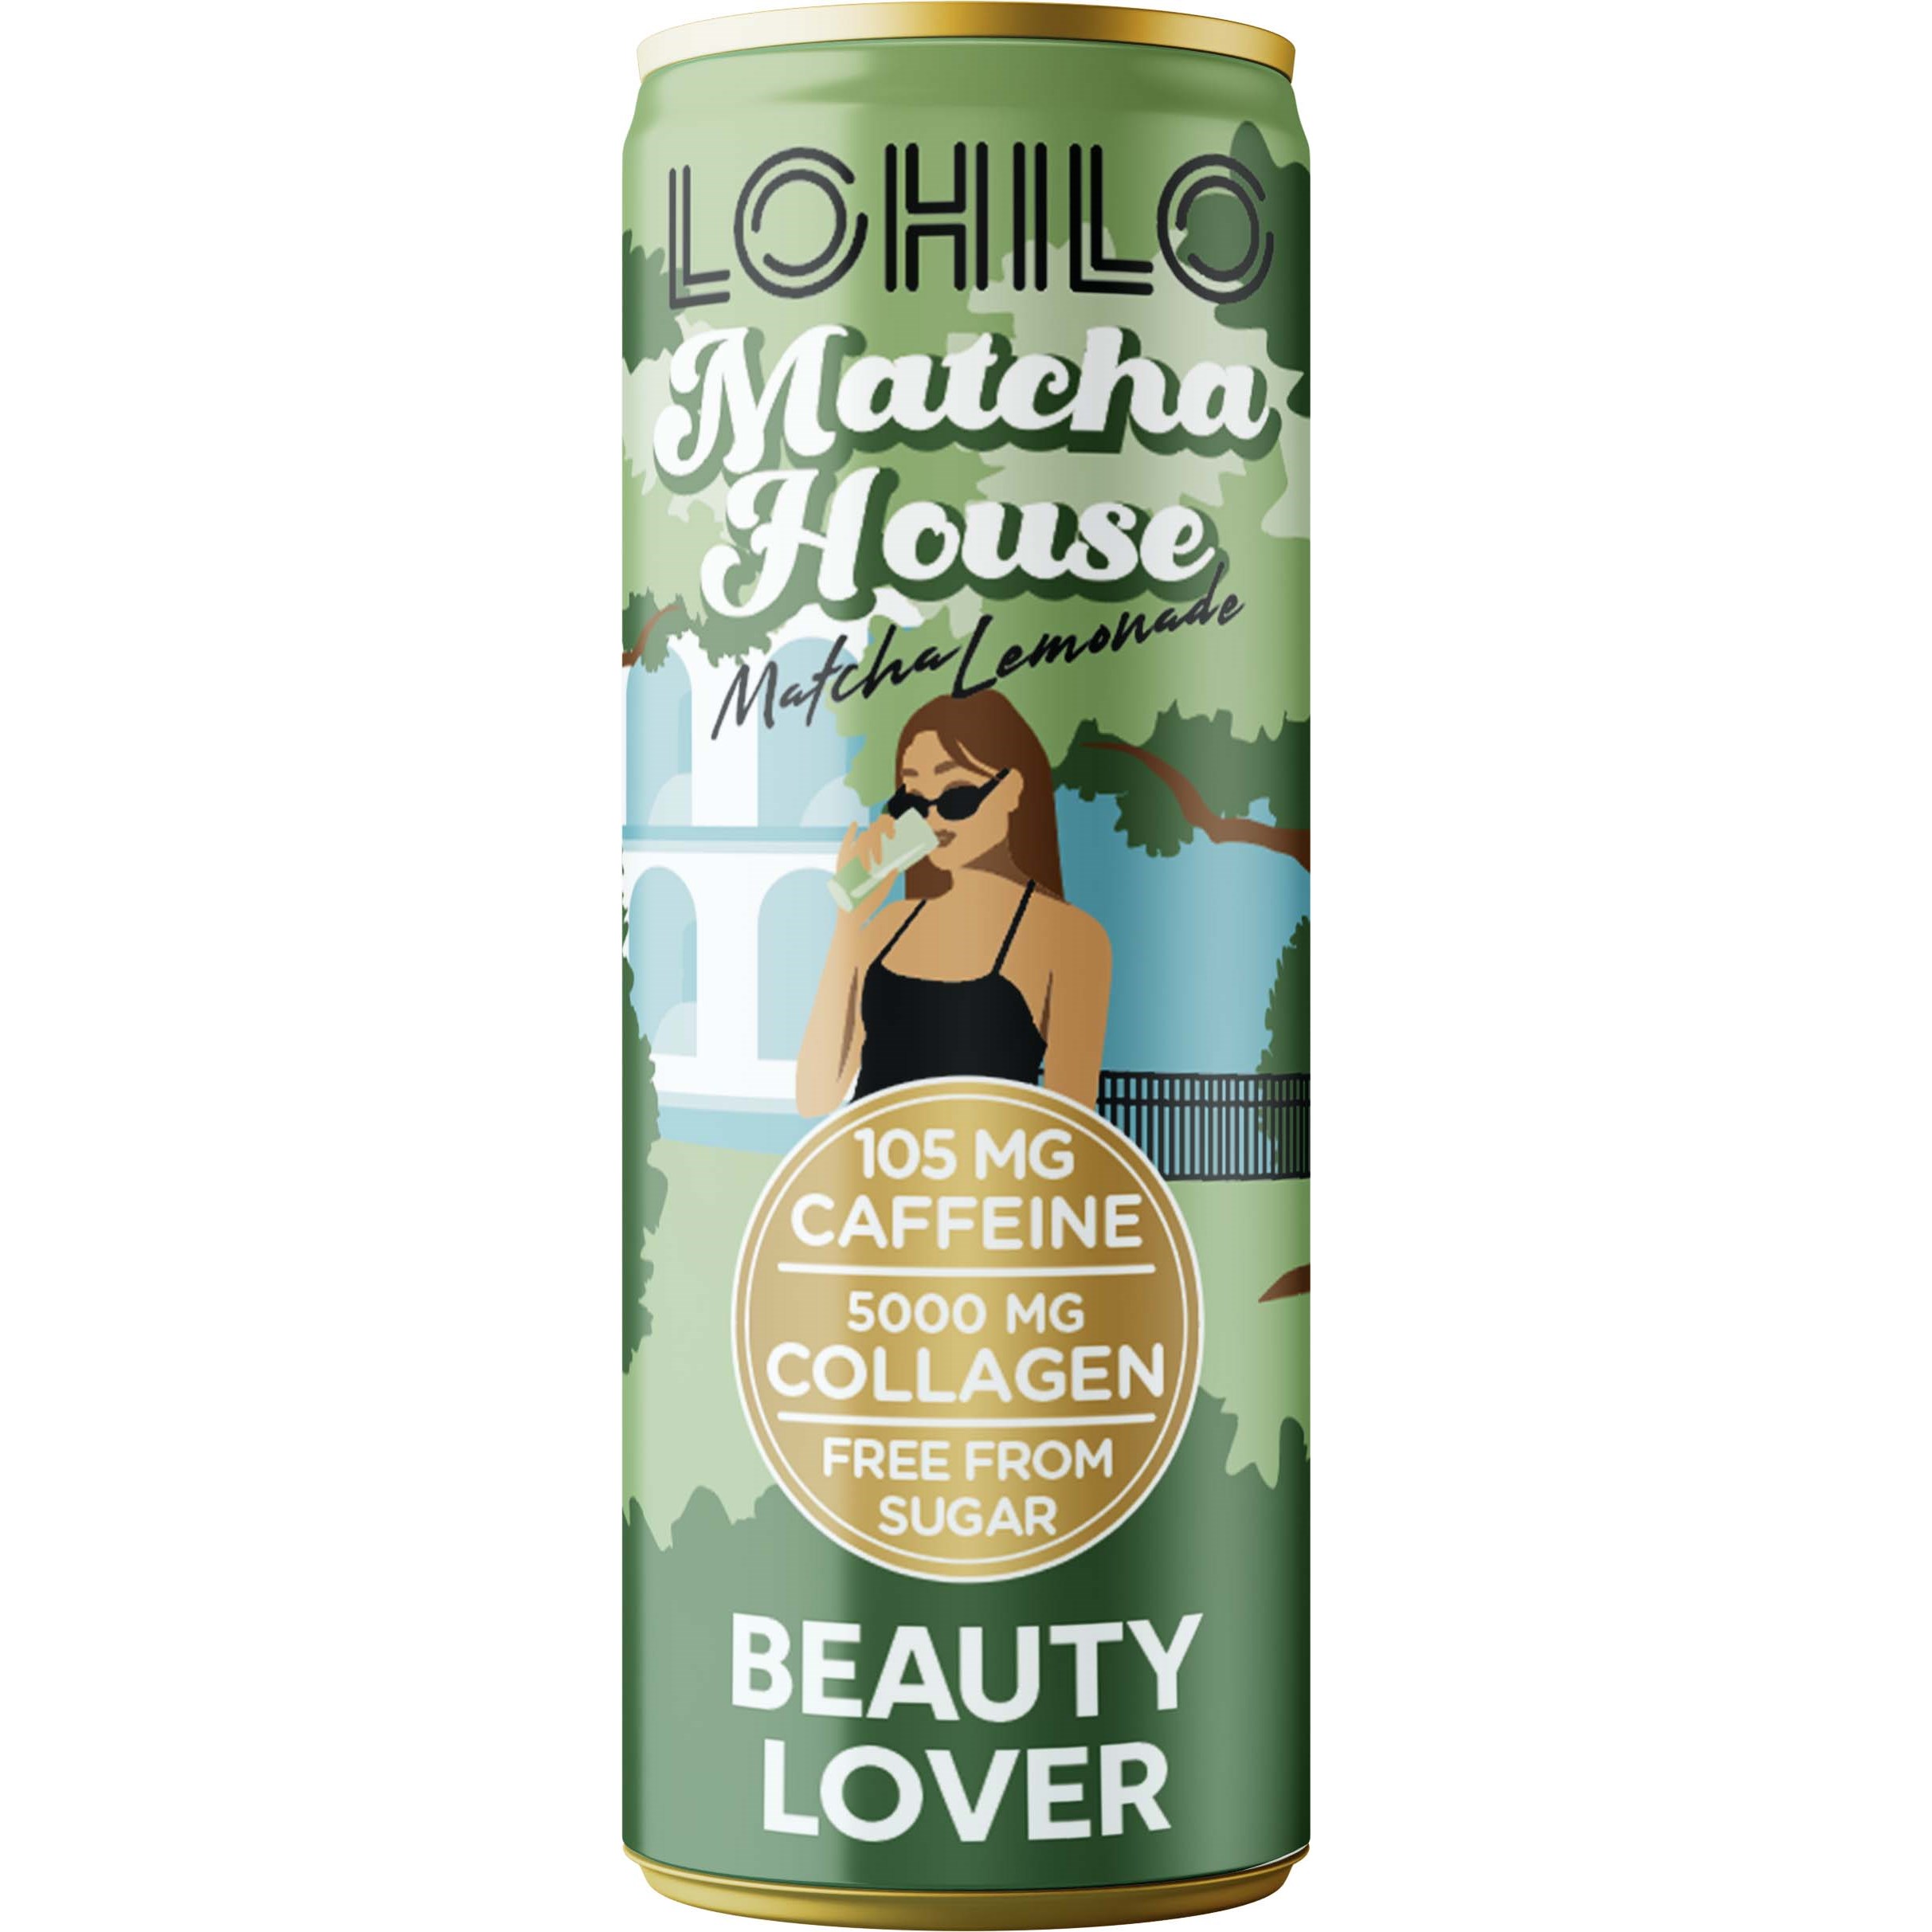 LOHILO Beauty Lover Matcha House Matcha Lemonade 330 ml